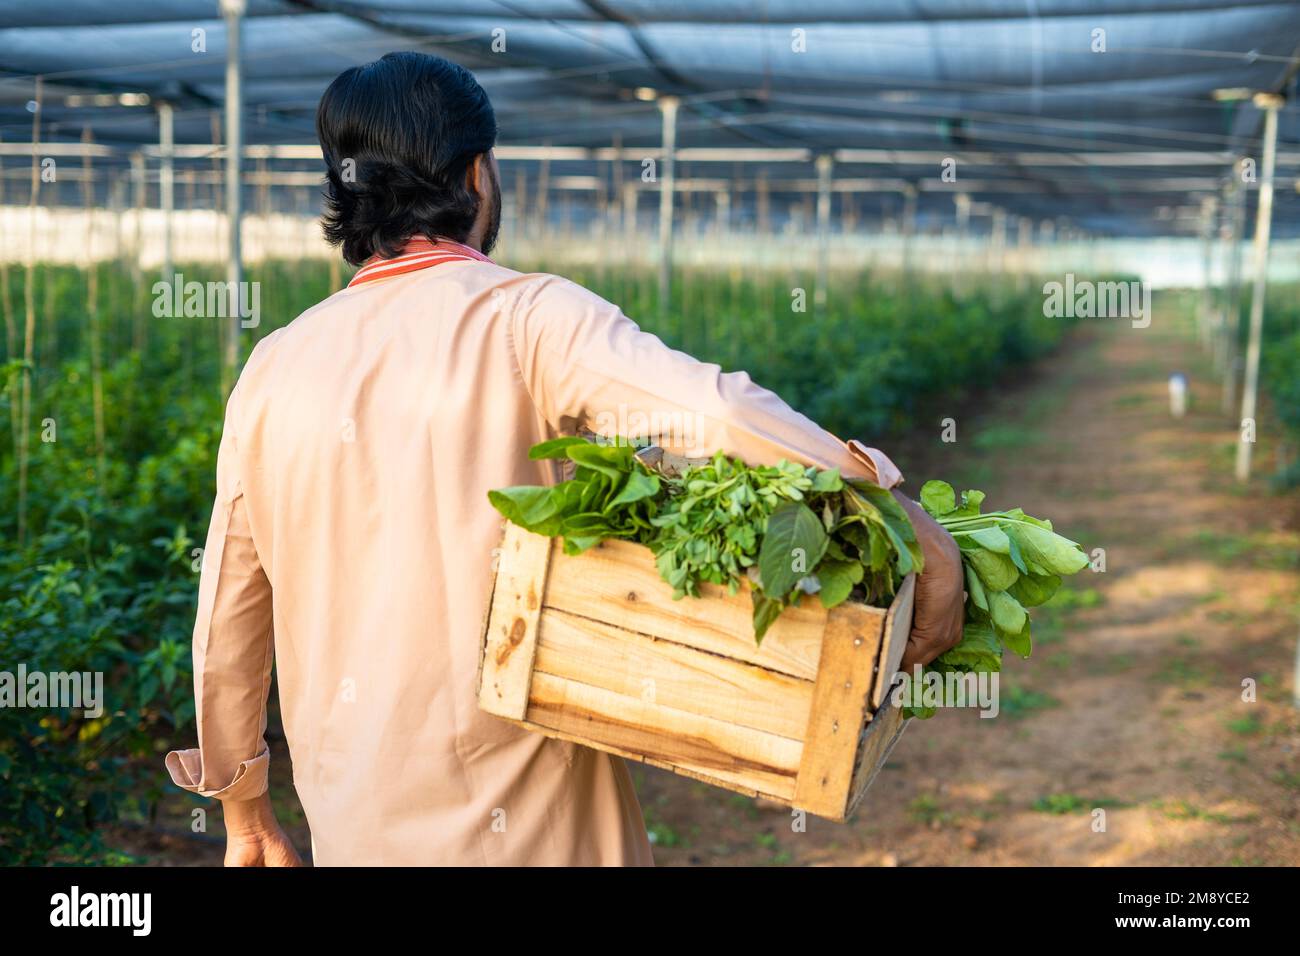 Vue arrière de l'agriculteur transportant le panier de légumes frais à la serre pour le marché - concept de l'agriculture biologique, les petites entreprises et le travail dur Banque D'Images